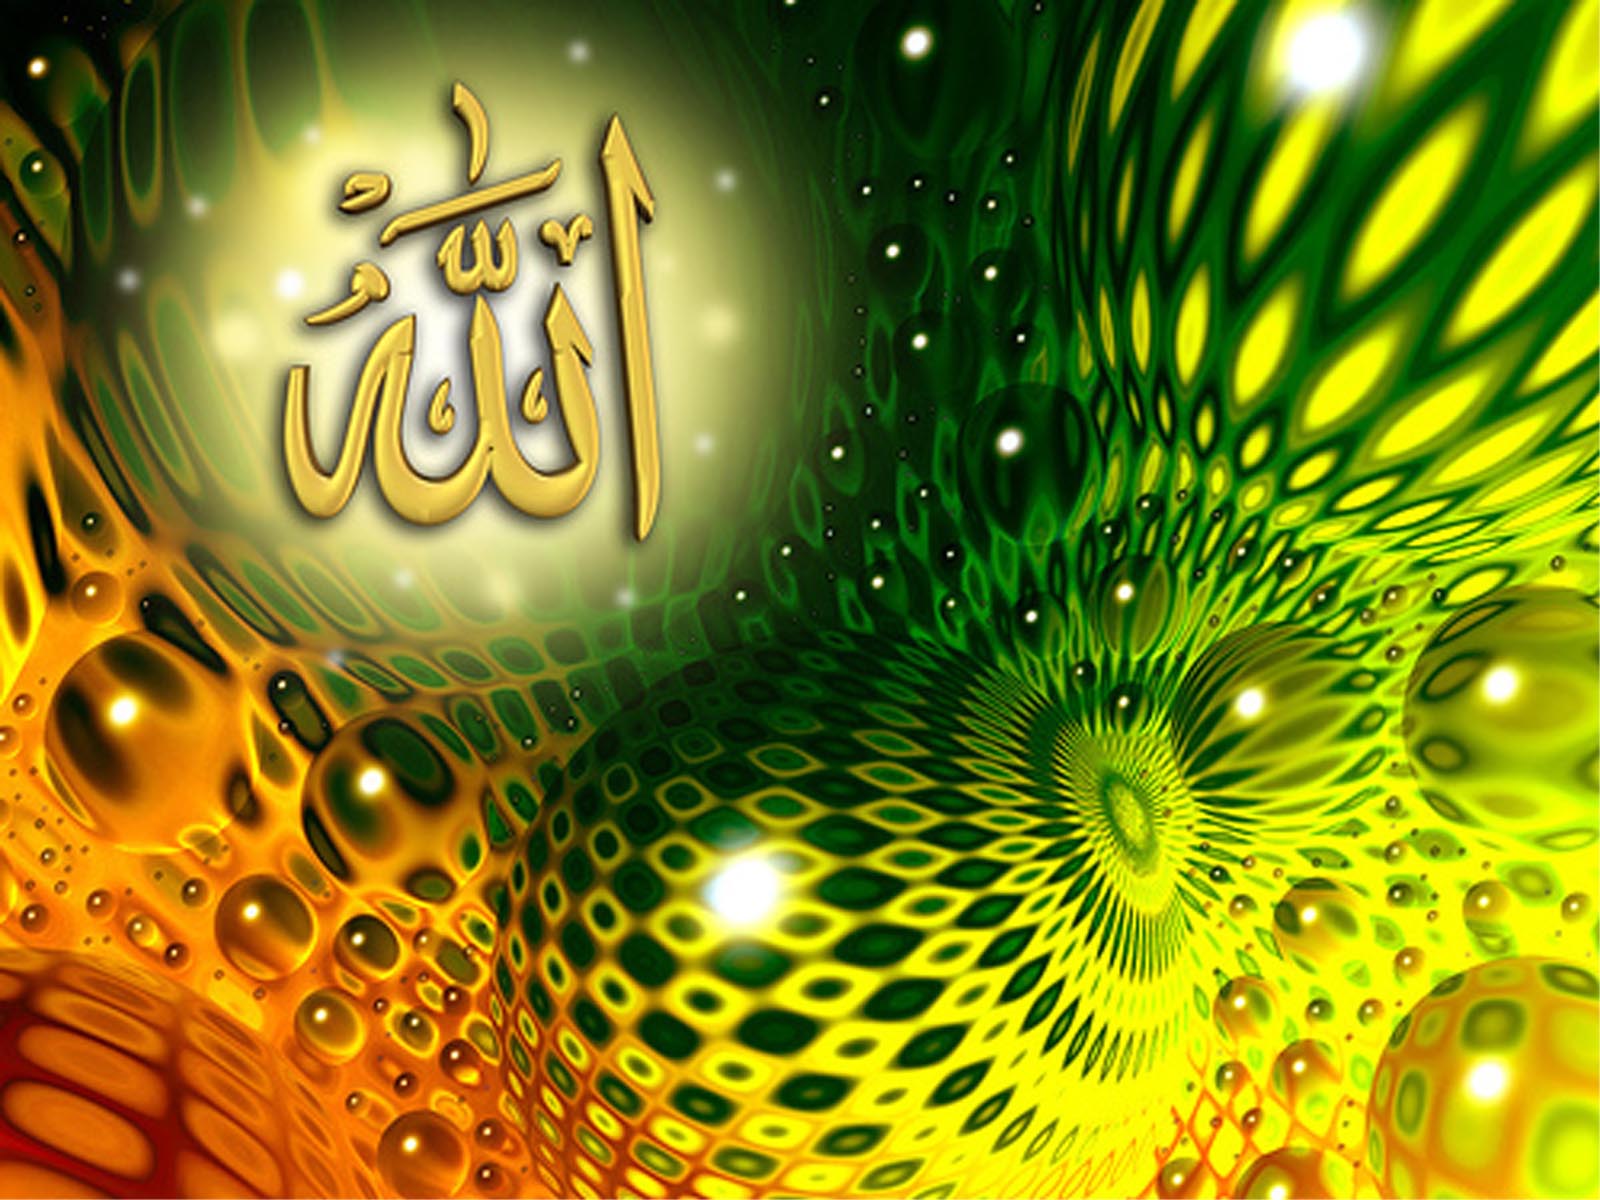 50+] Islamic Wallpaper Download - WallpaperSafari